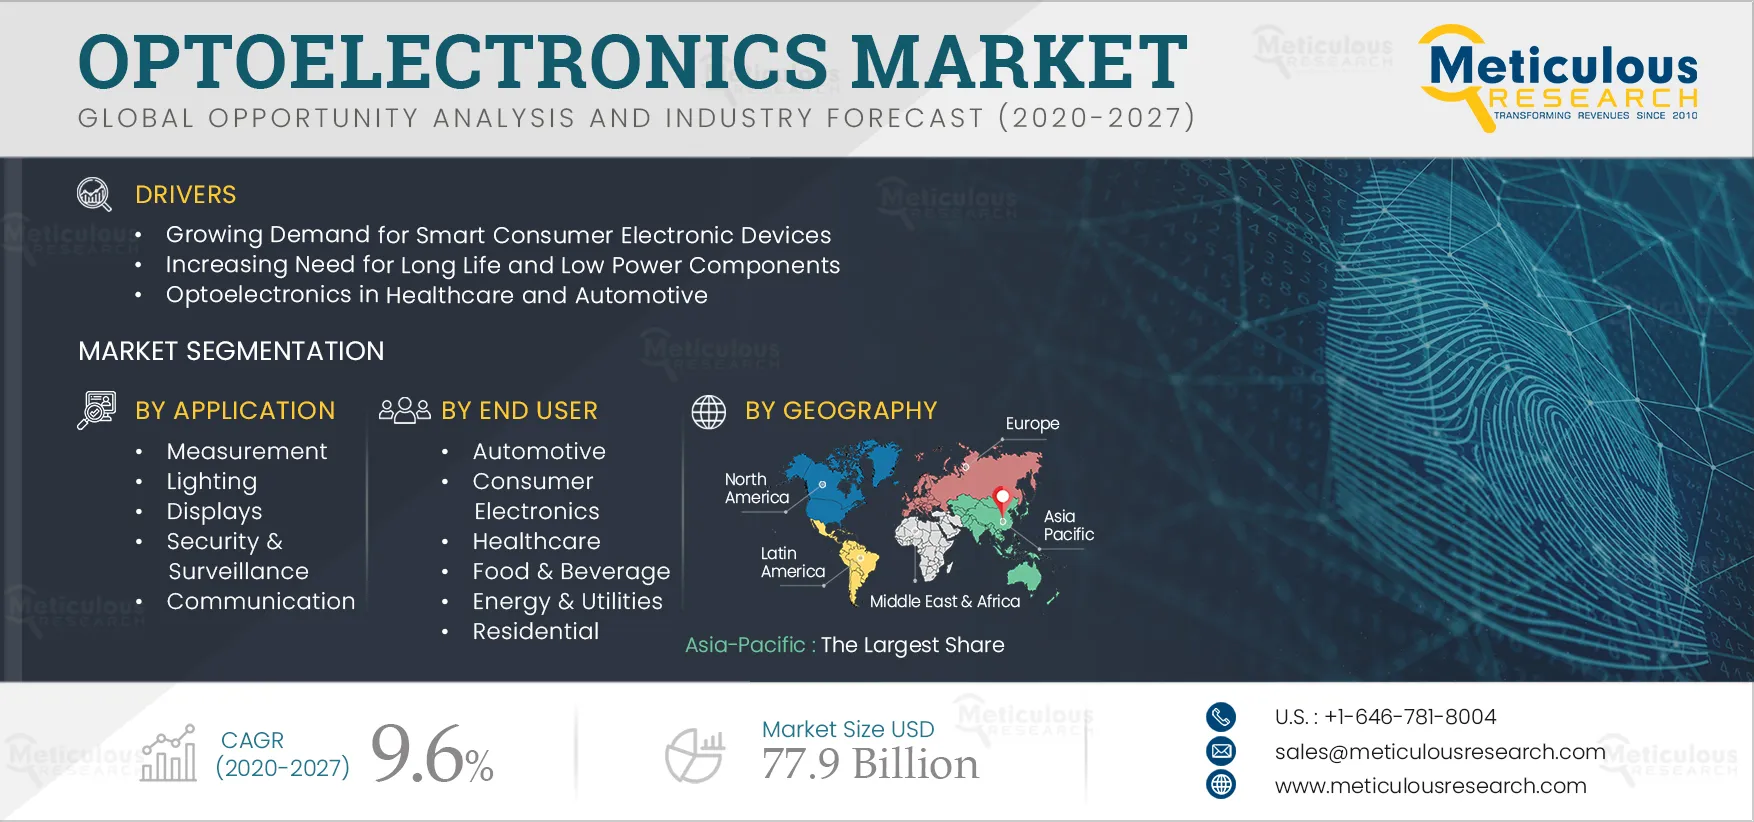 Optoelectronics Market